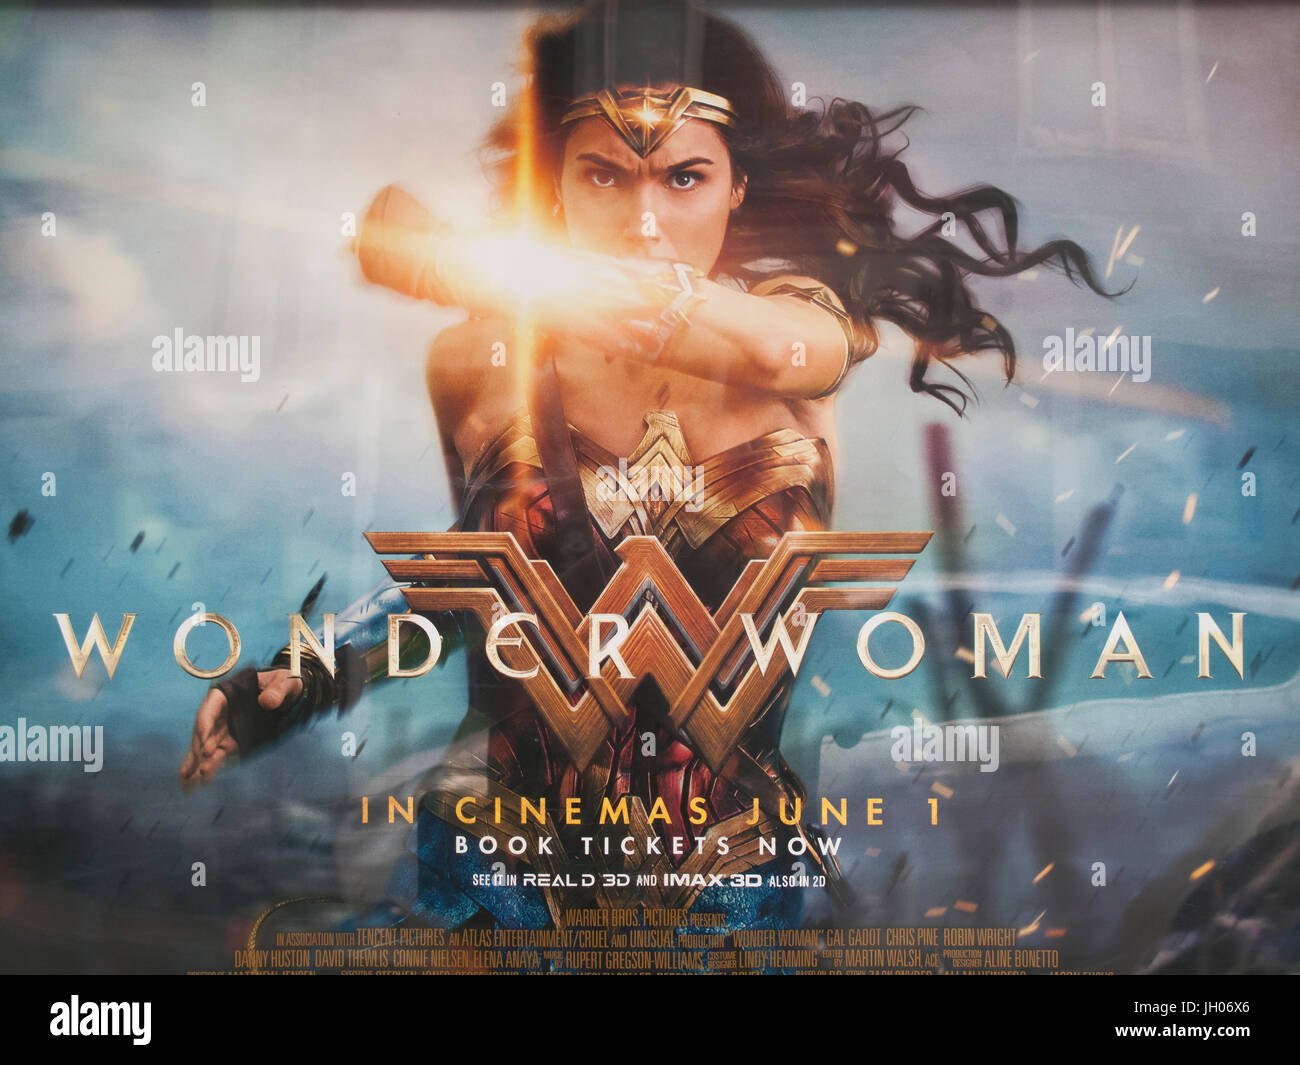 Motion photo affiche publicitaire de Wonder Woman, super héros film basé sur le personnage de DC Comics fixant Gal Gadot Banque D'Images